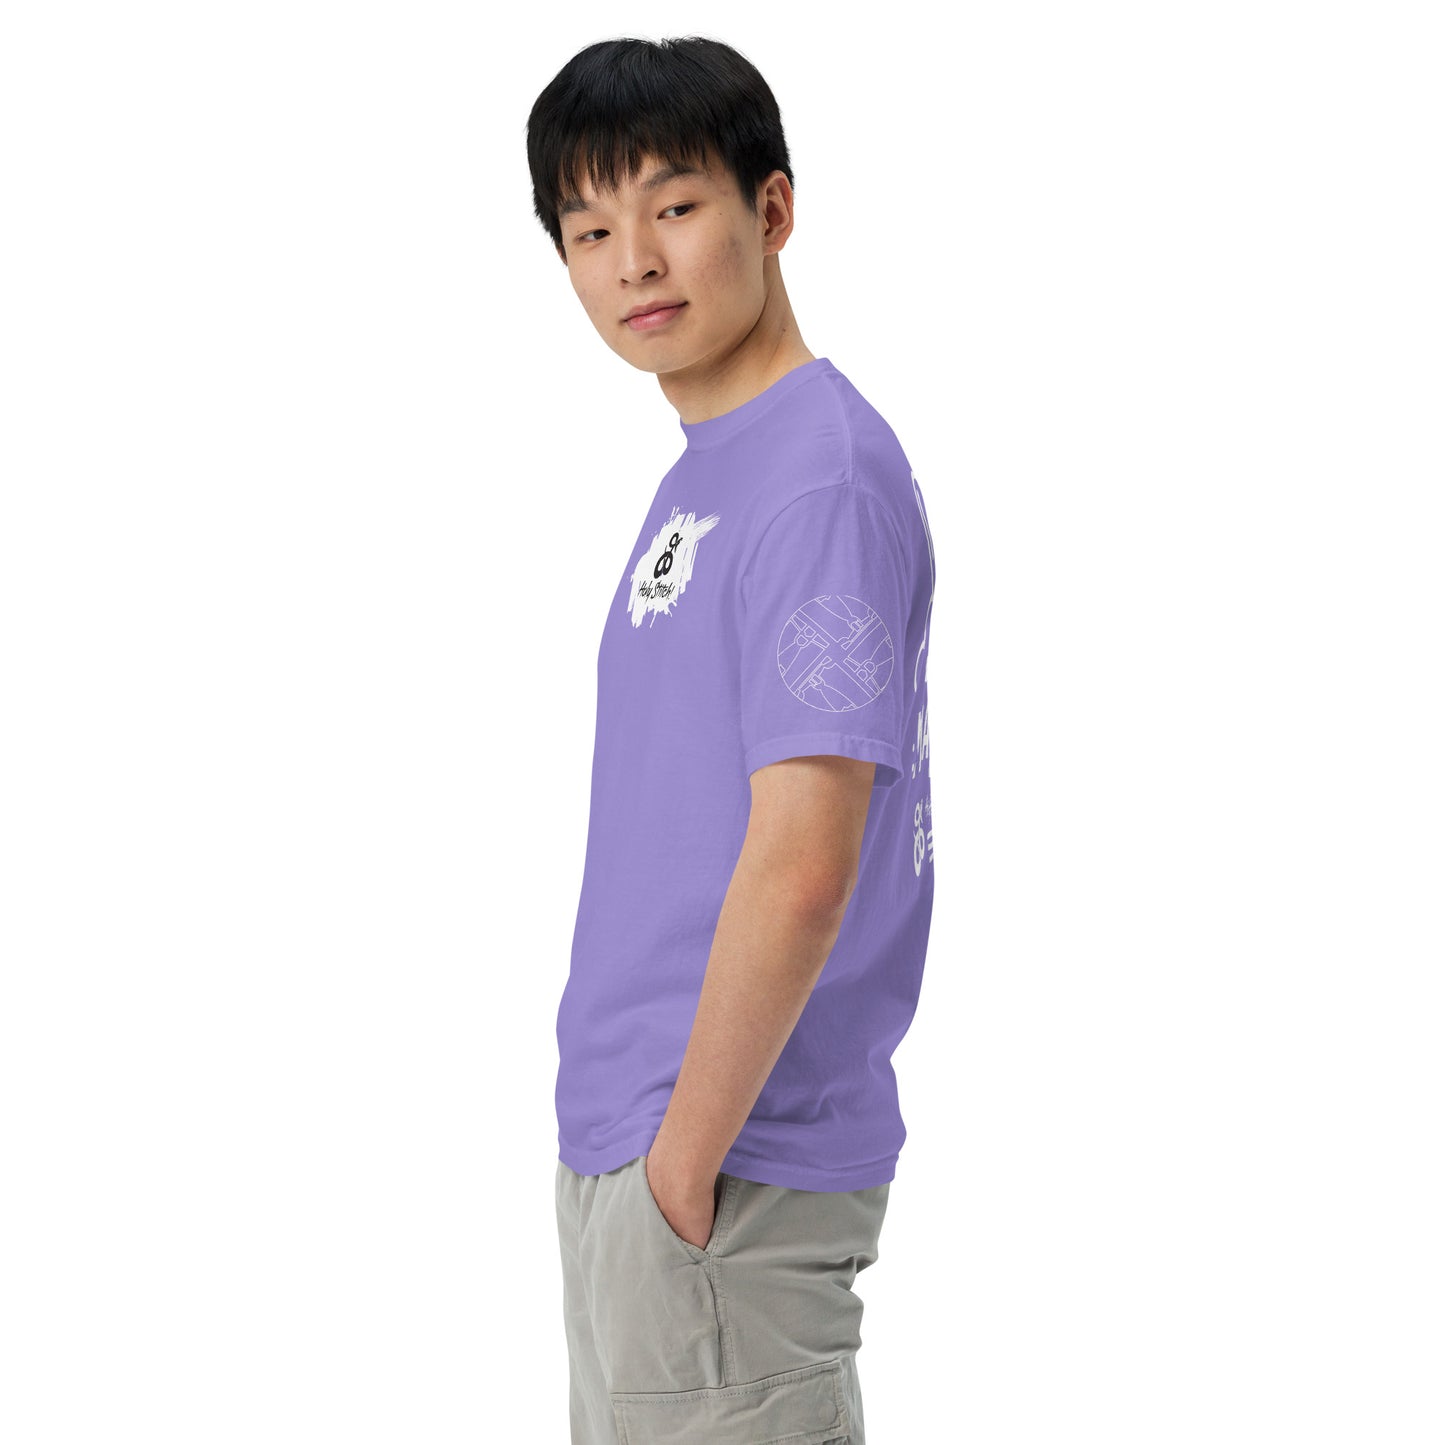 White Jeans Matter Garment-dyed Heavyweight t-shirt